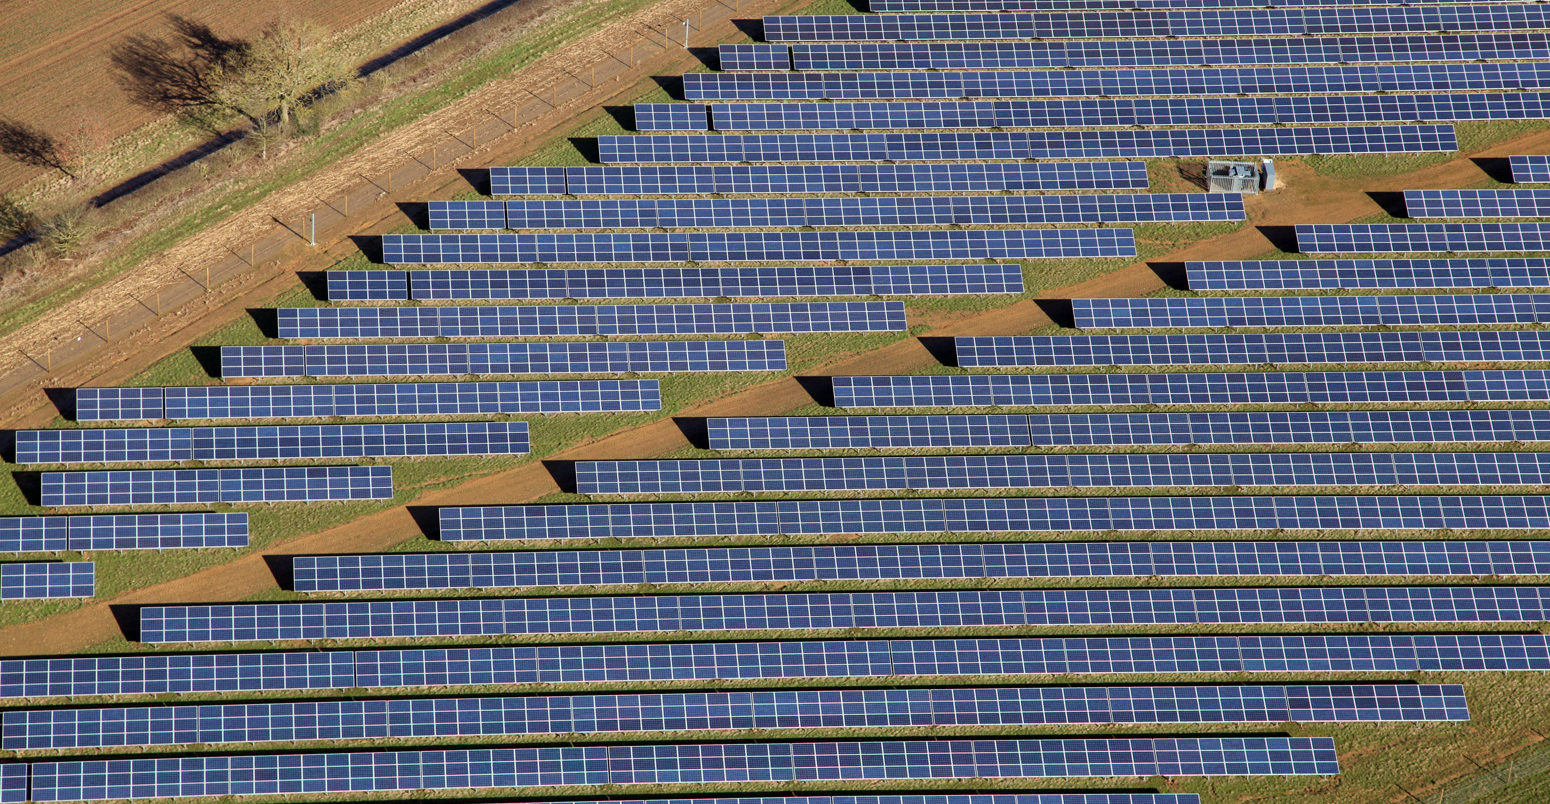 Solar farm in the UK.